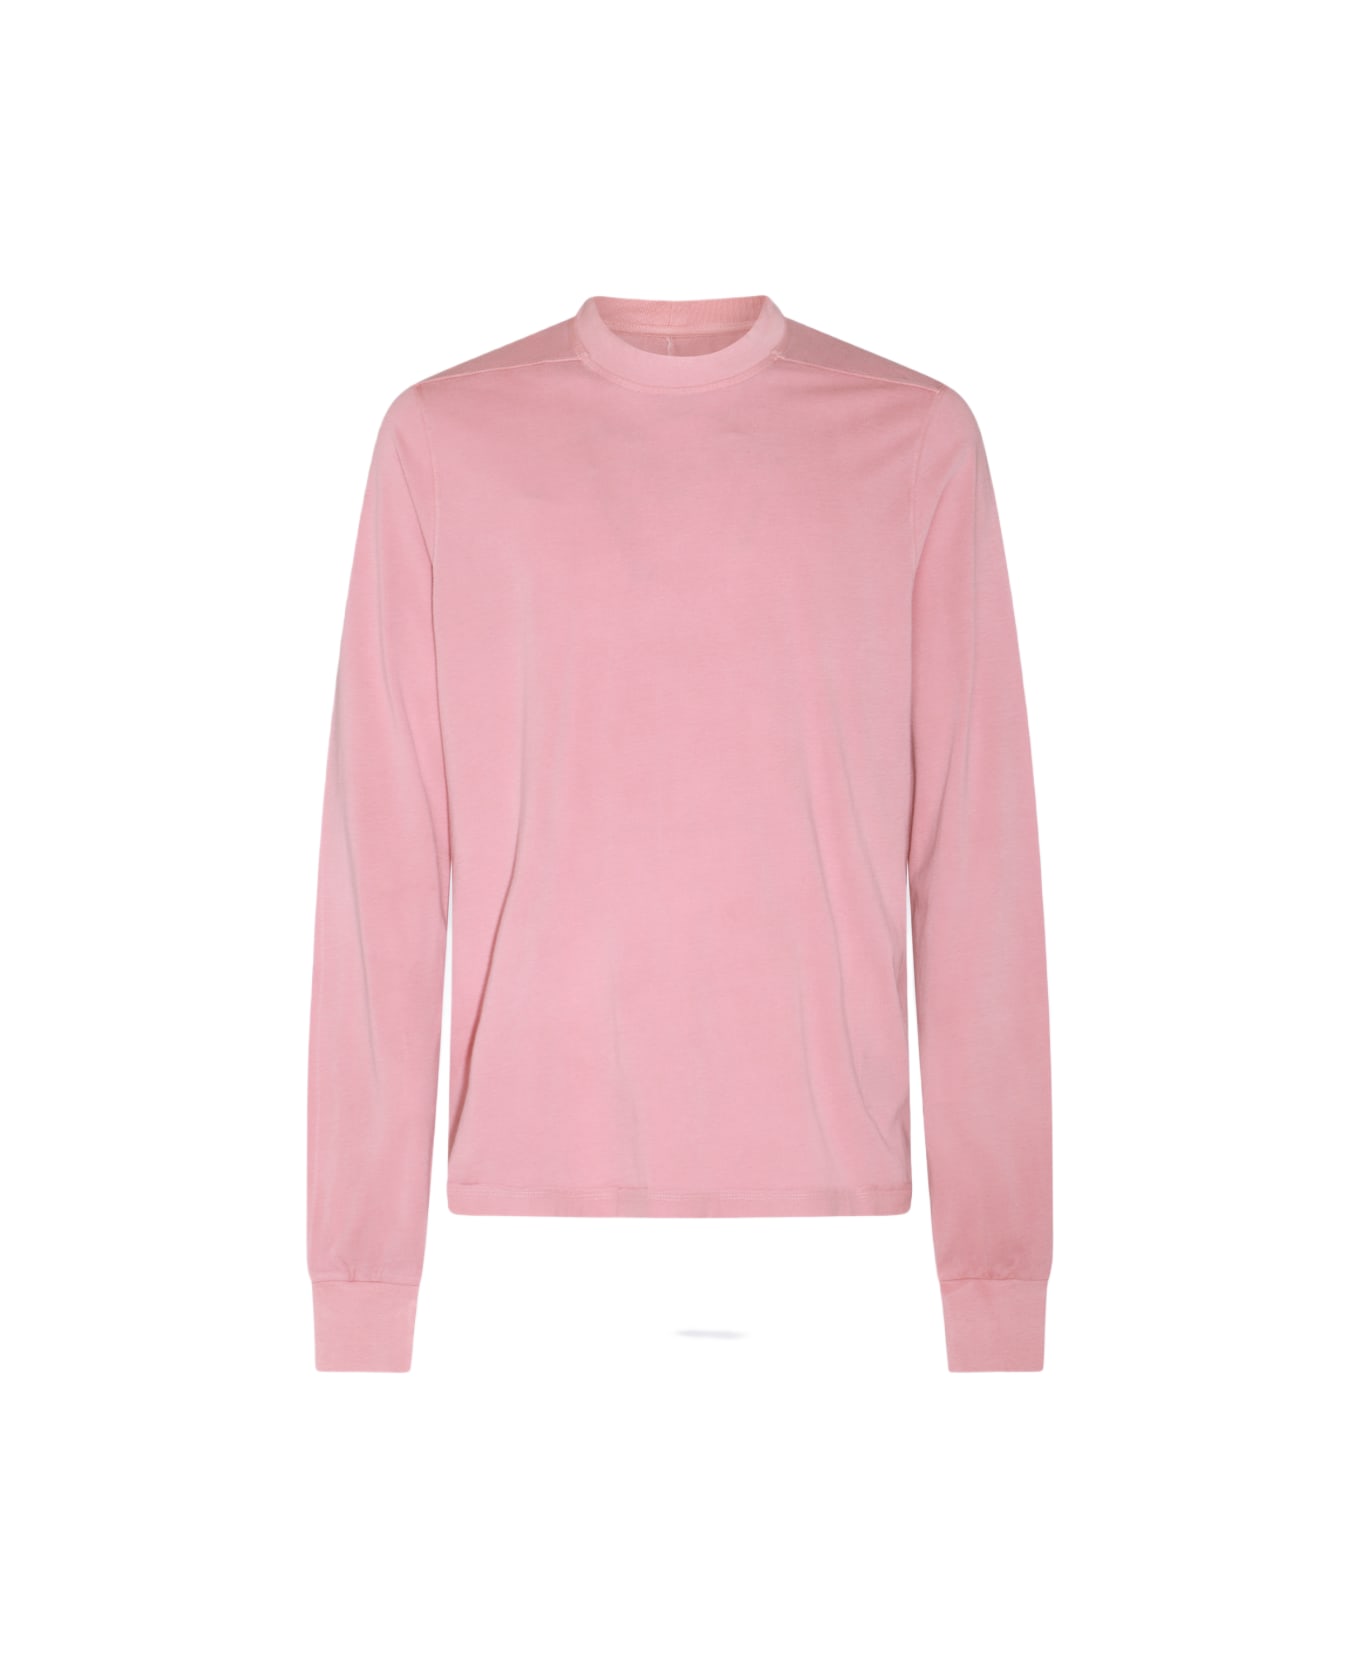 DRKSHDW Pink Cotton Sweatshirt - Pink